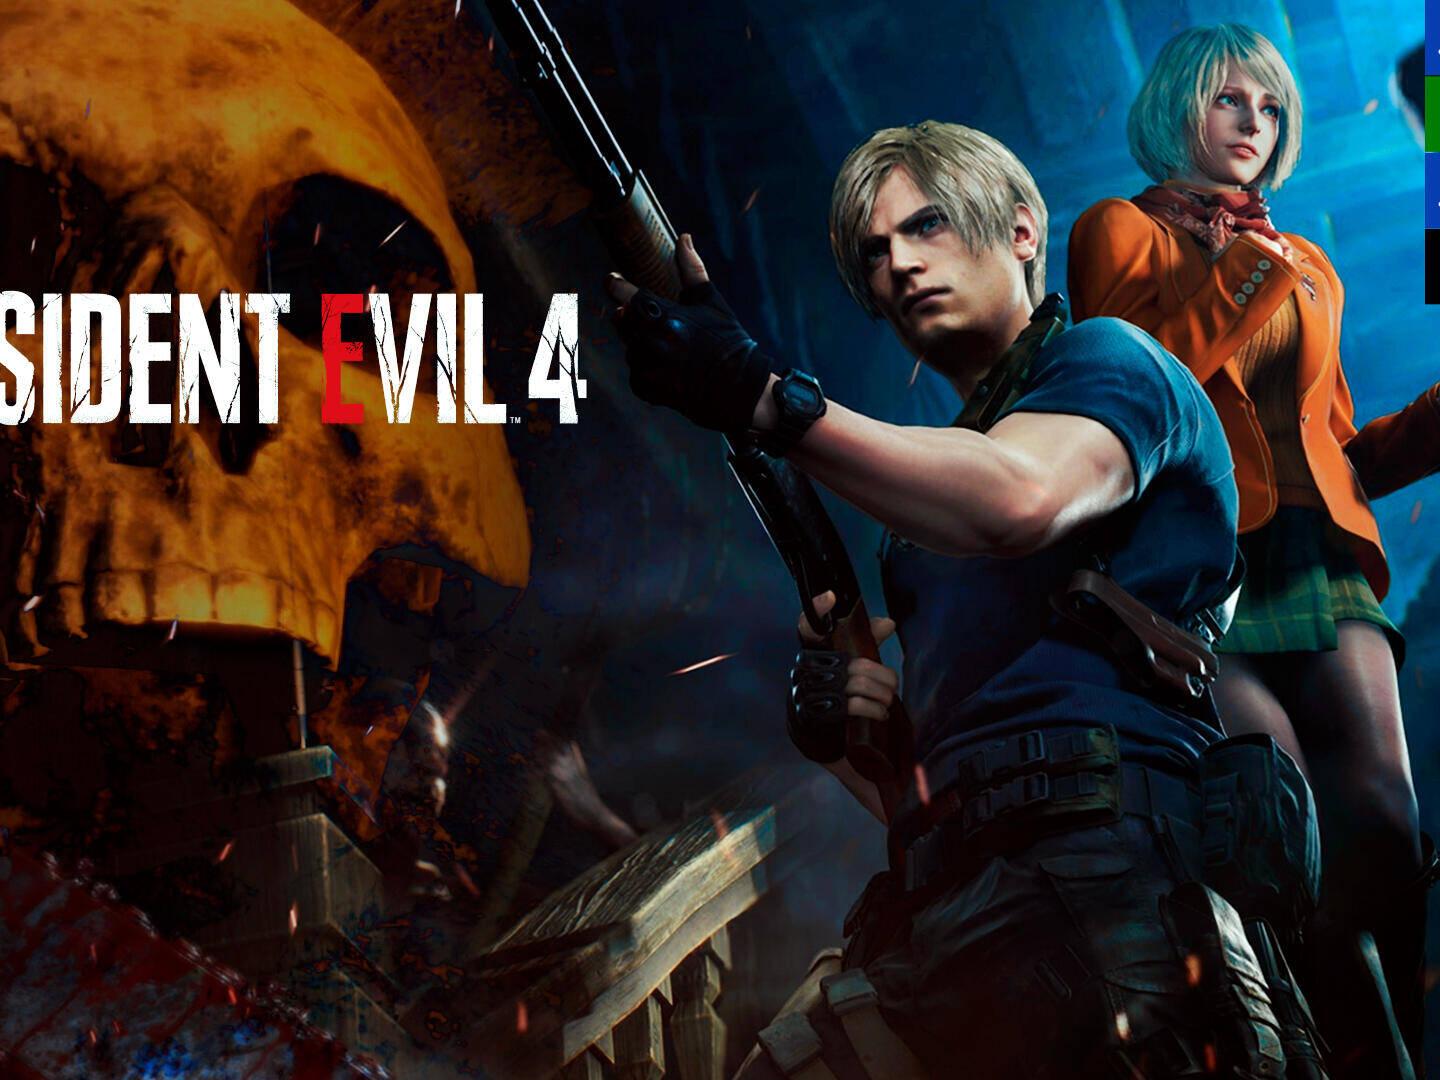 Resident Evil 4 Remake Ashley Graham for GTA San Andreas